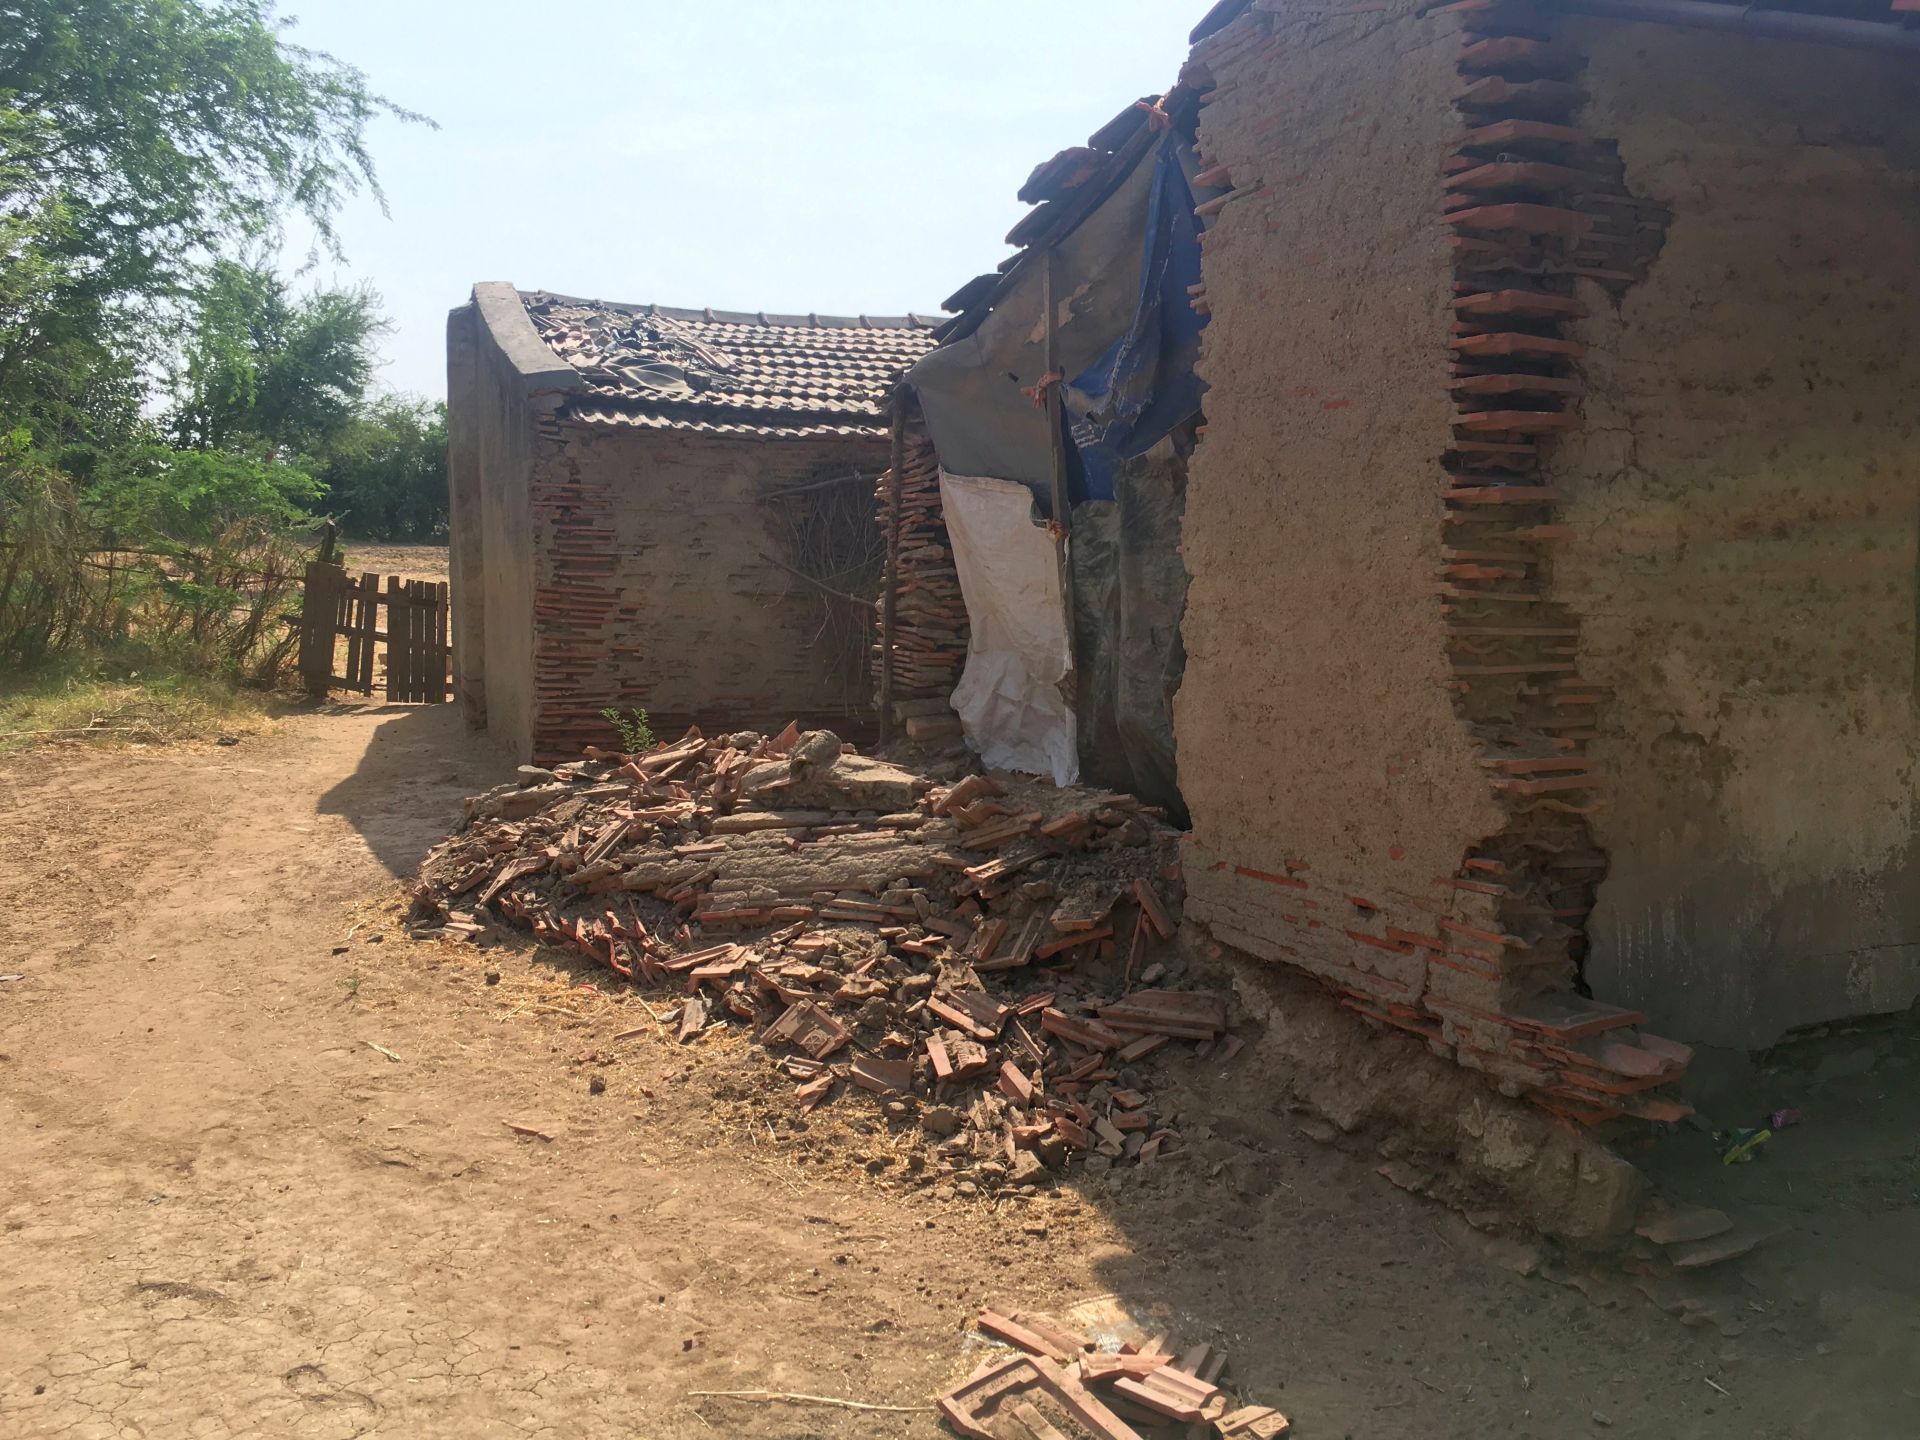 2017 की बाढ़ के कारण मोरबी में टूटा हुआ घर, जो 2019 तक नहीं बनाया गया था (फोटो: चेतना वर्मा)